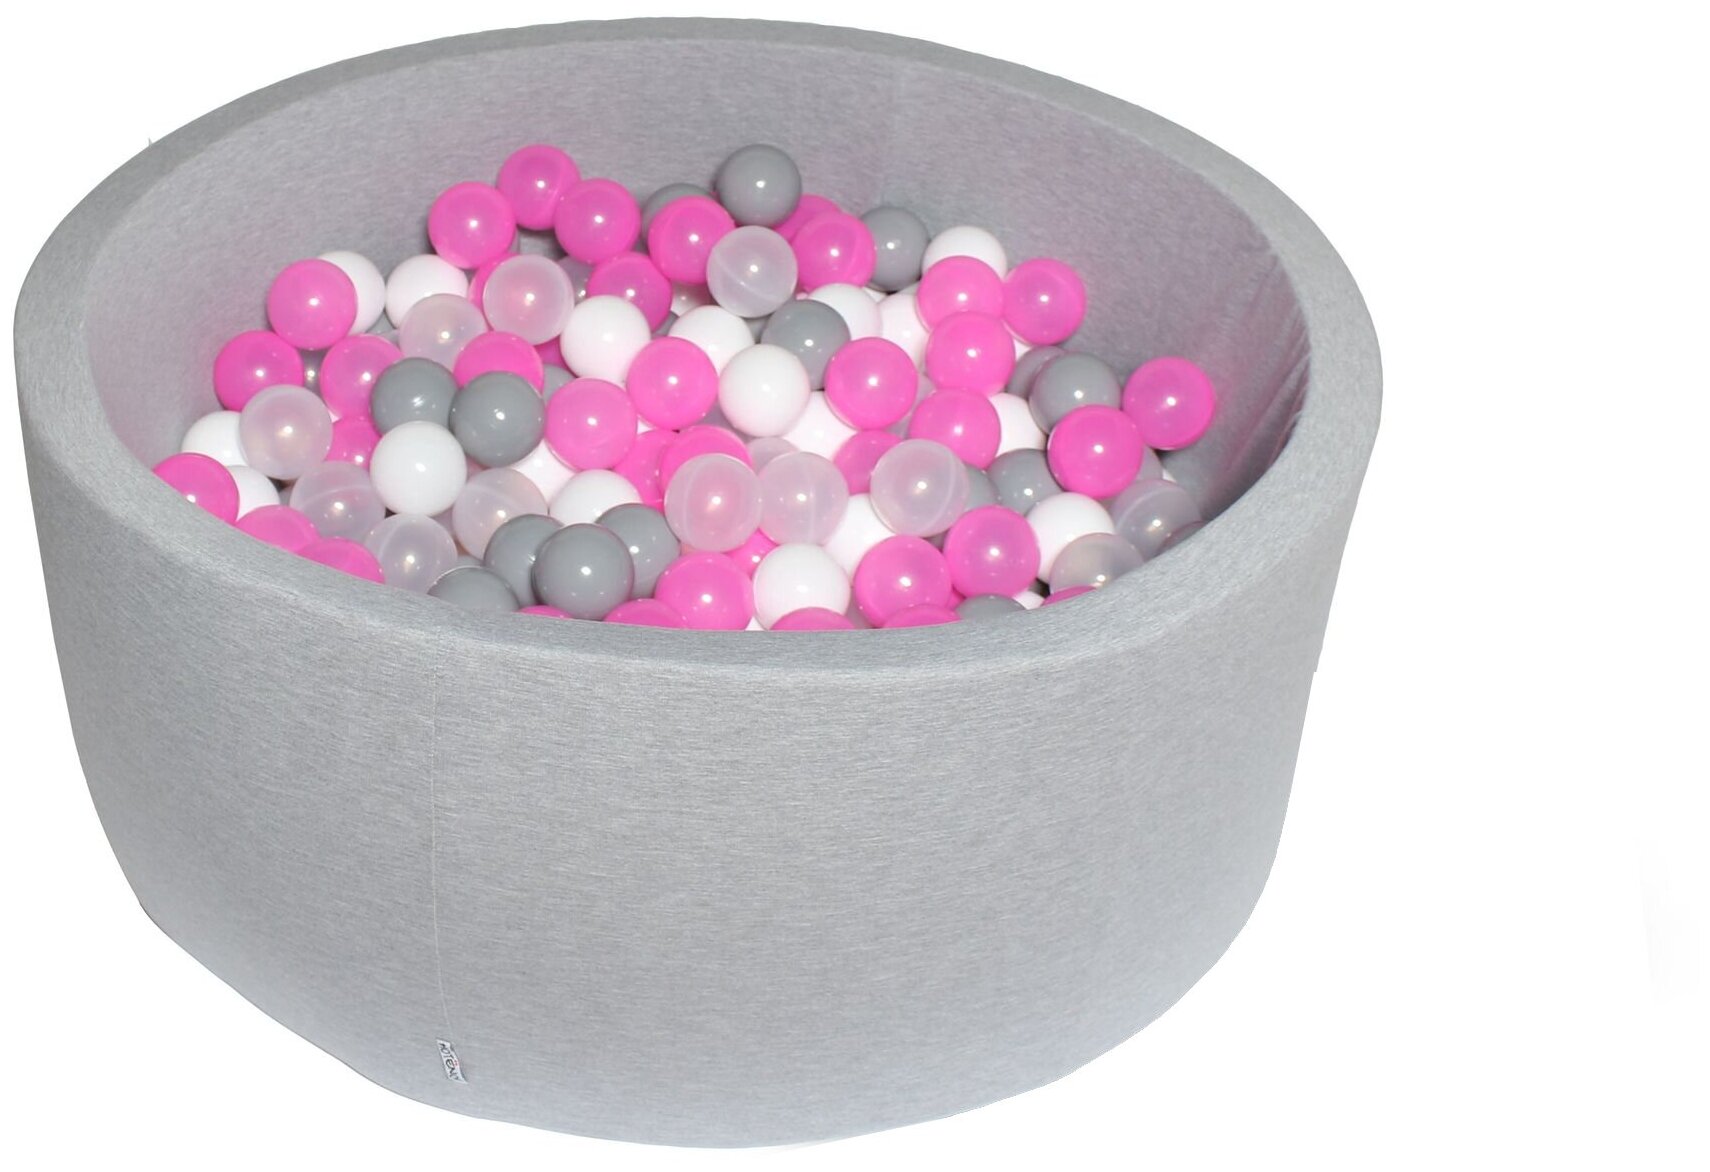 Сухой игровой бассейн “Розовый праздник” серый выс. 40см с 200 шарами в комплекте: серый, бел, прозр., розов.